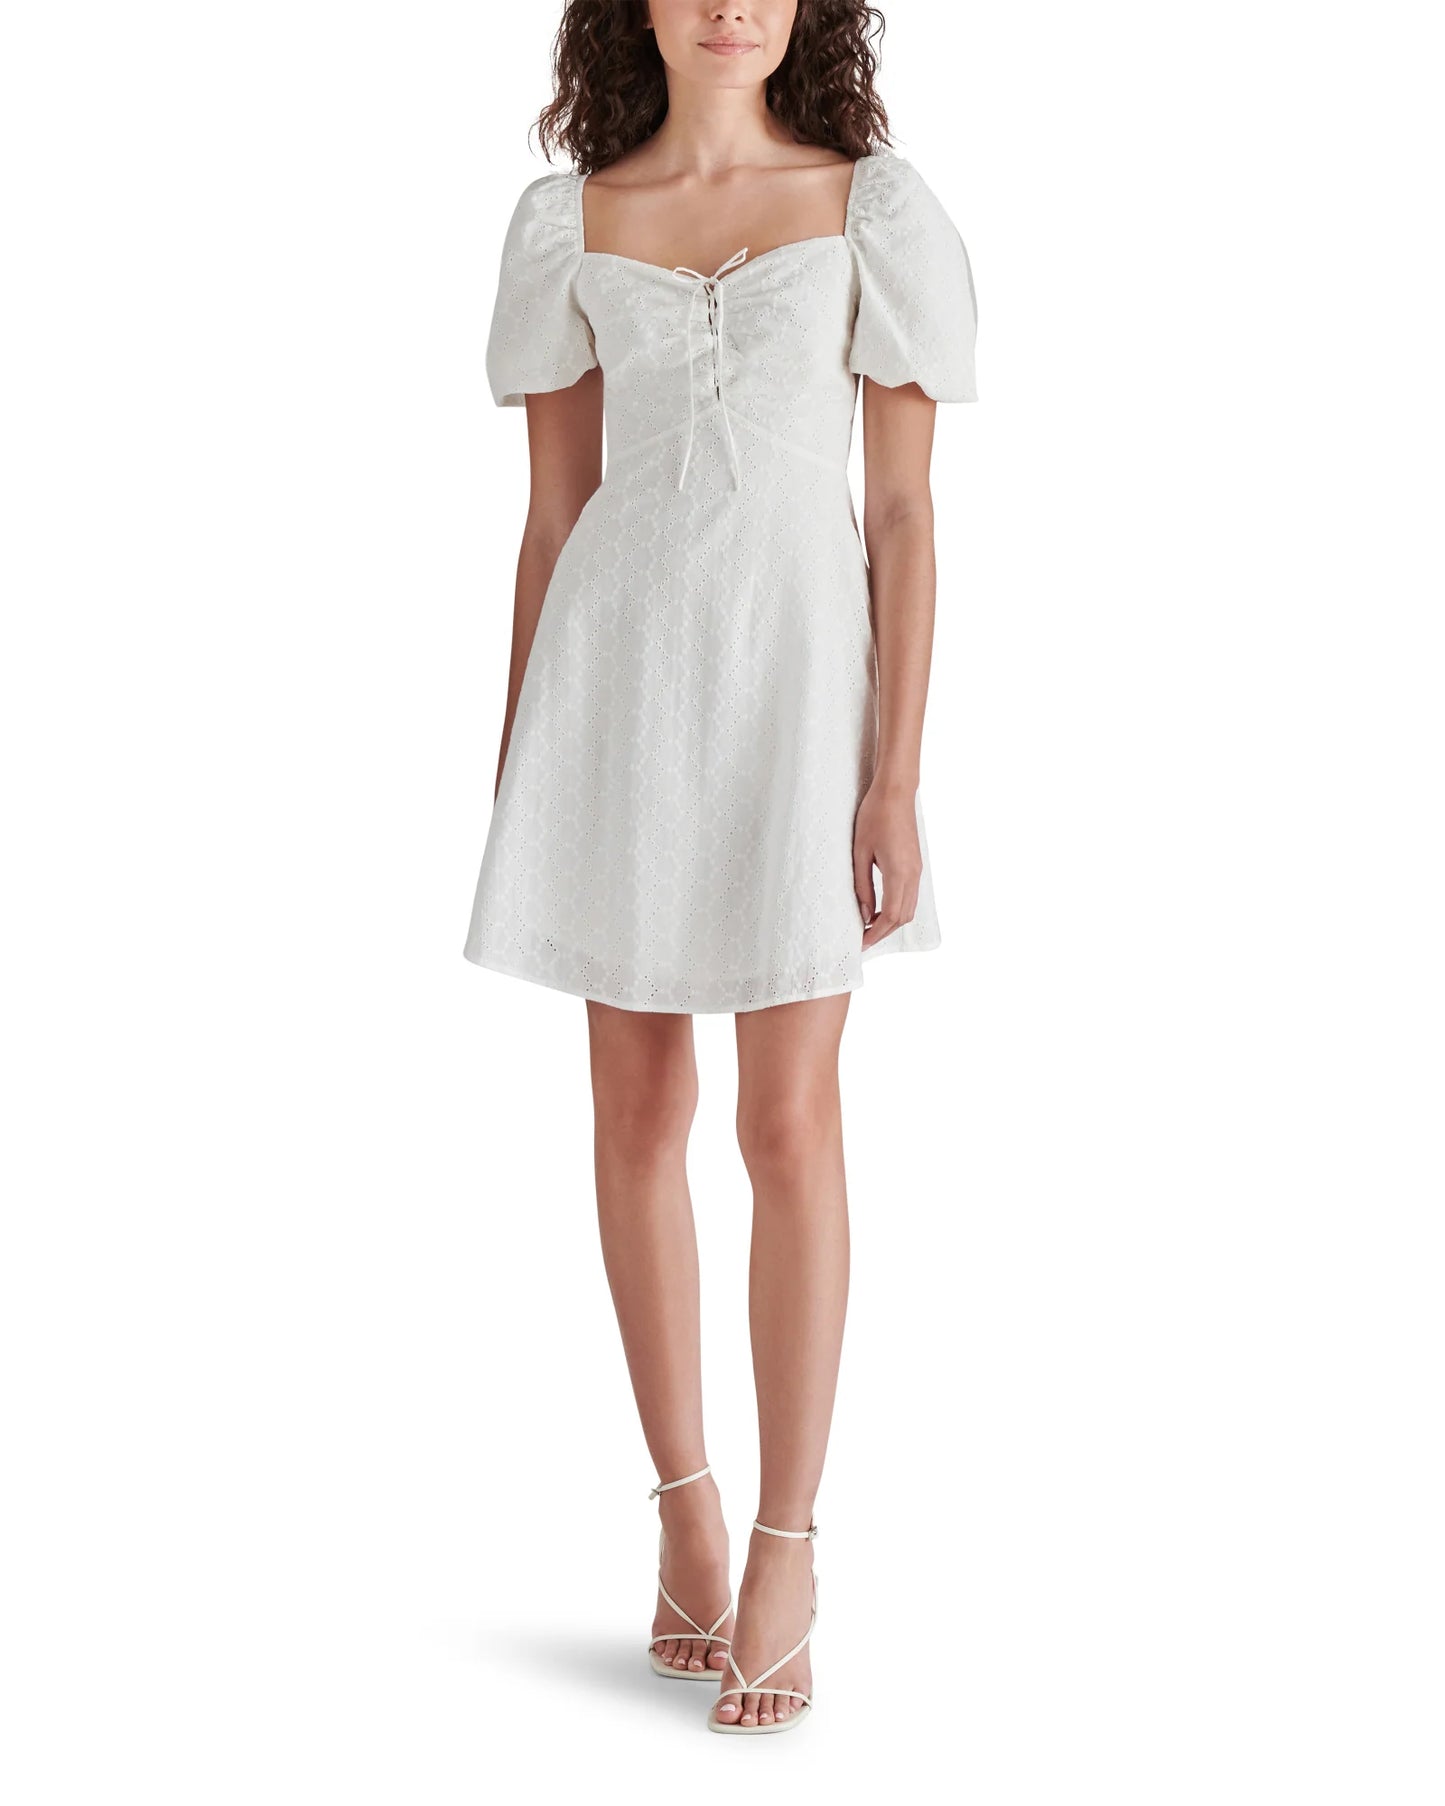 White Violeta Dress